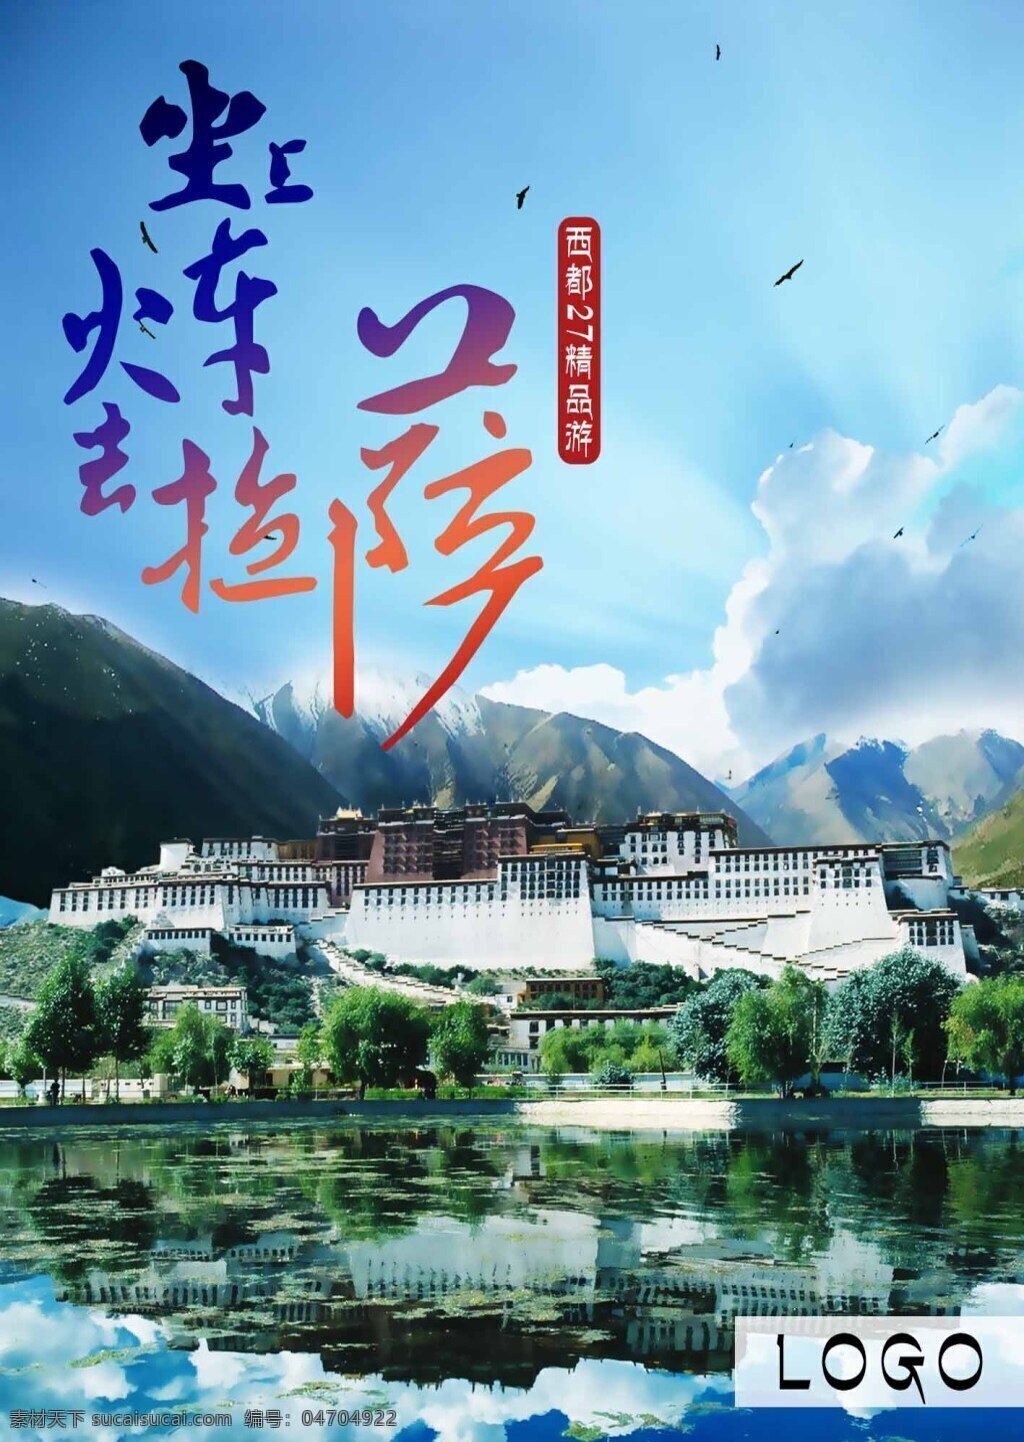 拉萨旅游海报 旅行社 拉萨 西藏 旅游 国内游 西部 旅行 旅社 携程 火车 蓝天 布达拉宫 青藏 自驾 青色 天蓝色